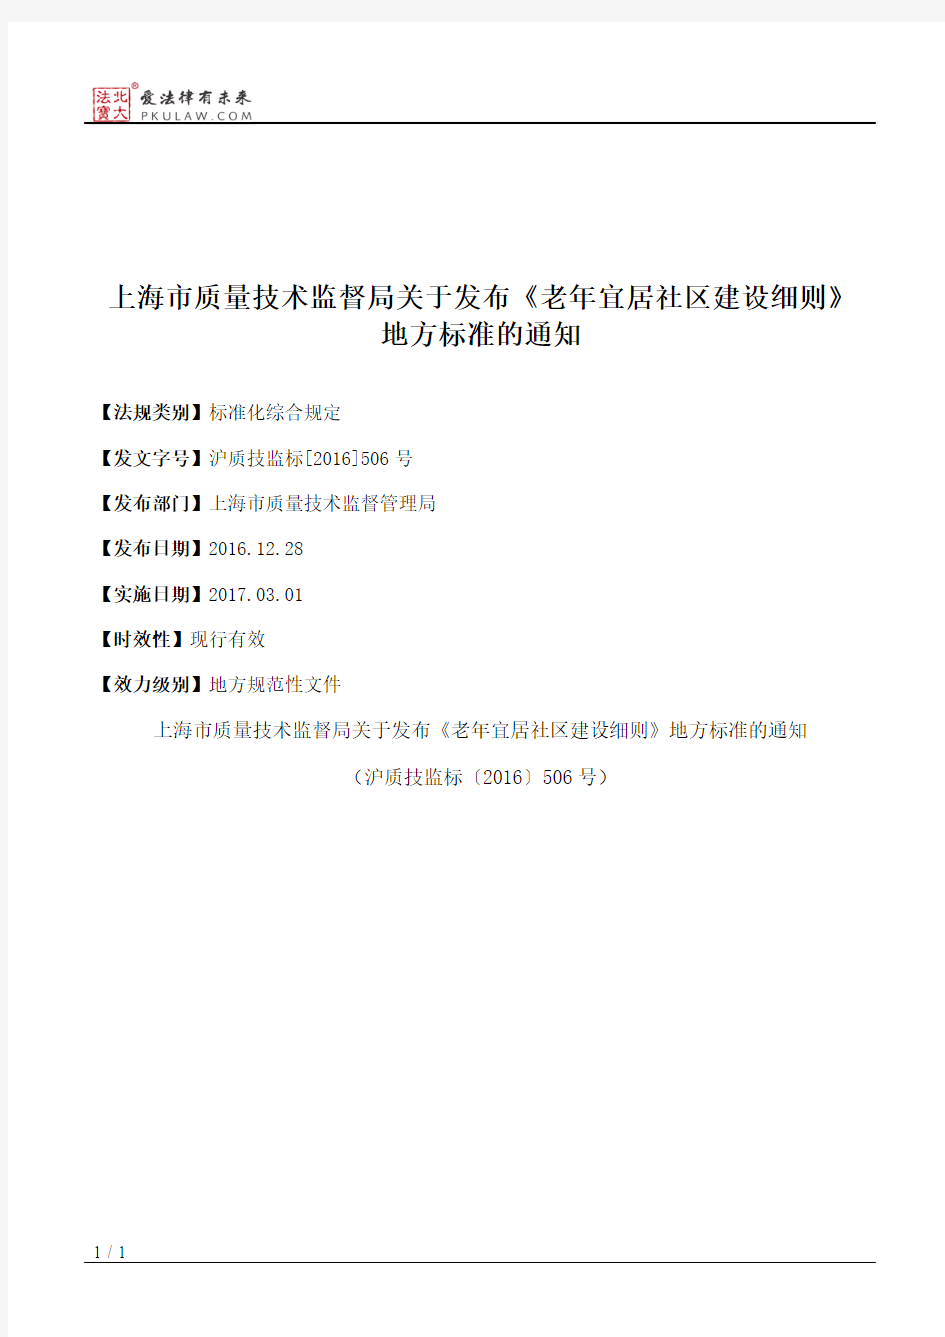 上海市质量技术监督局关于发布《老年宜居社区建设细则》地方标准的通知